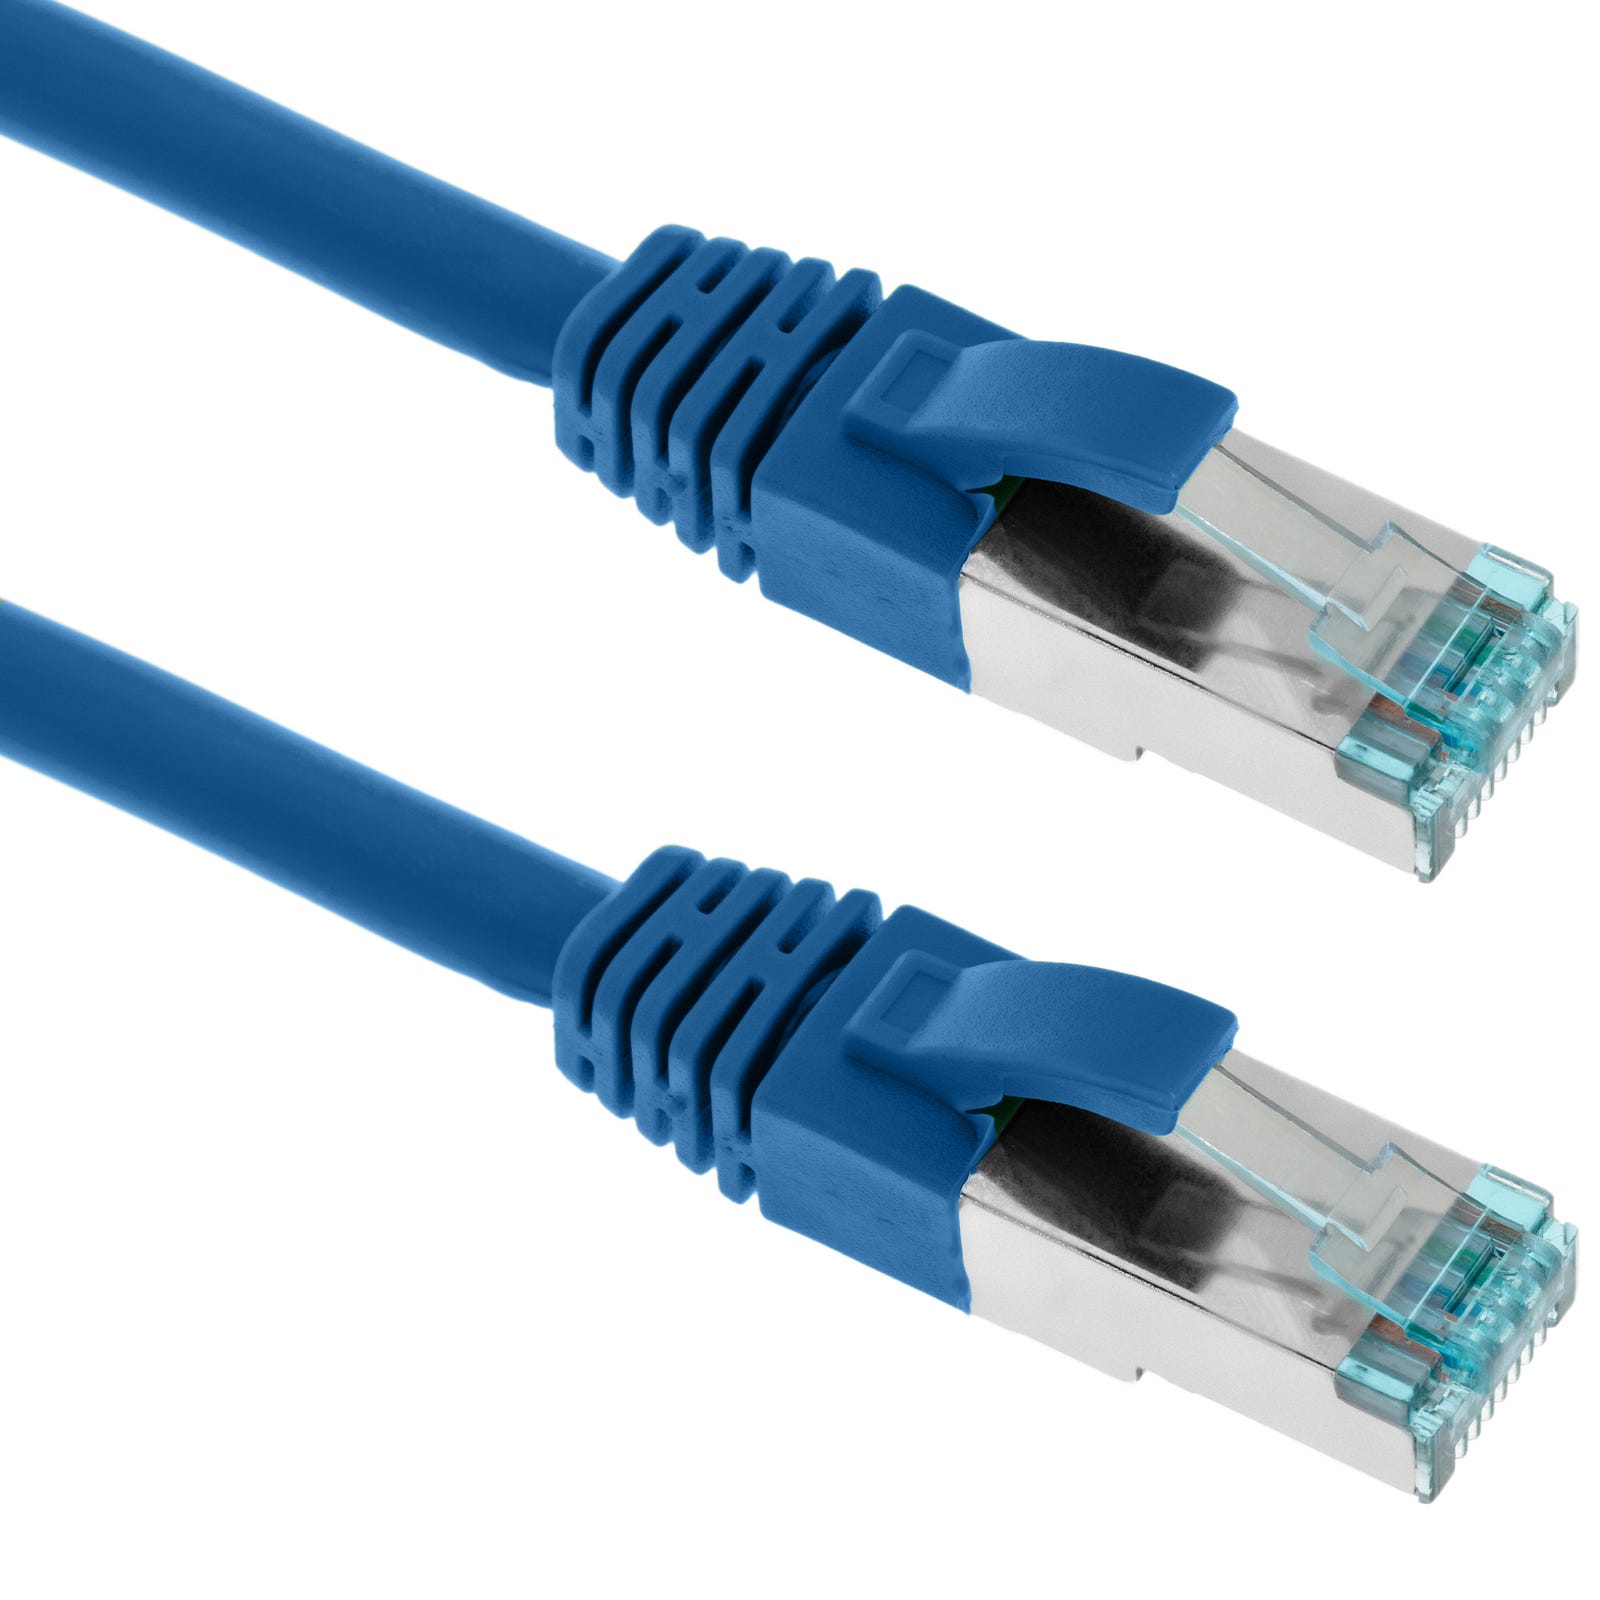 Cable de red ethernet 1m LAN SFTP RJ45 Cat. 7 Azul